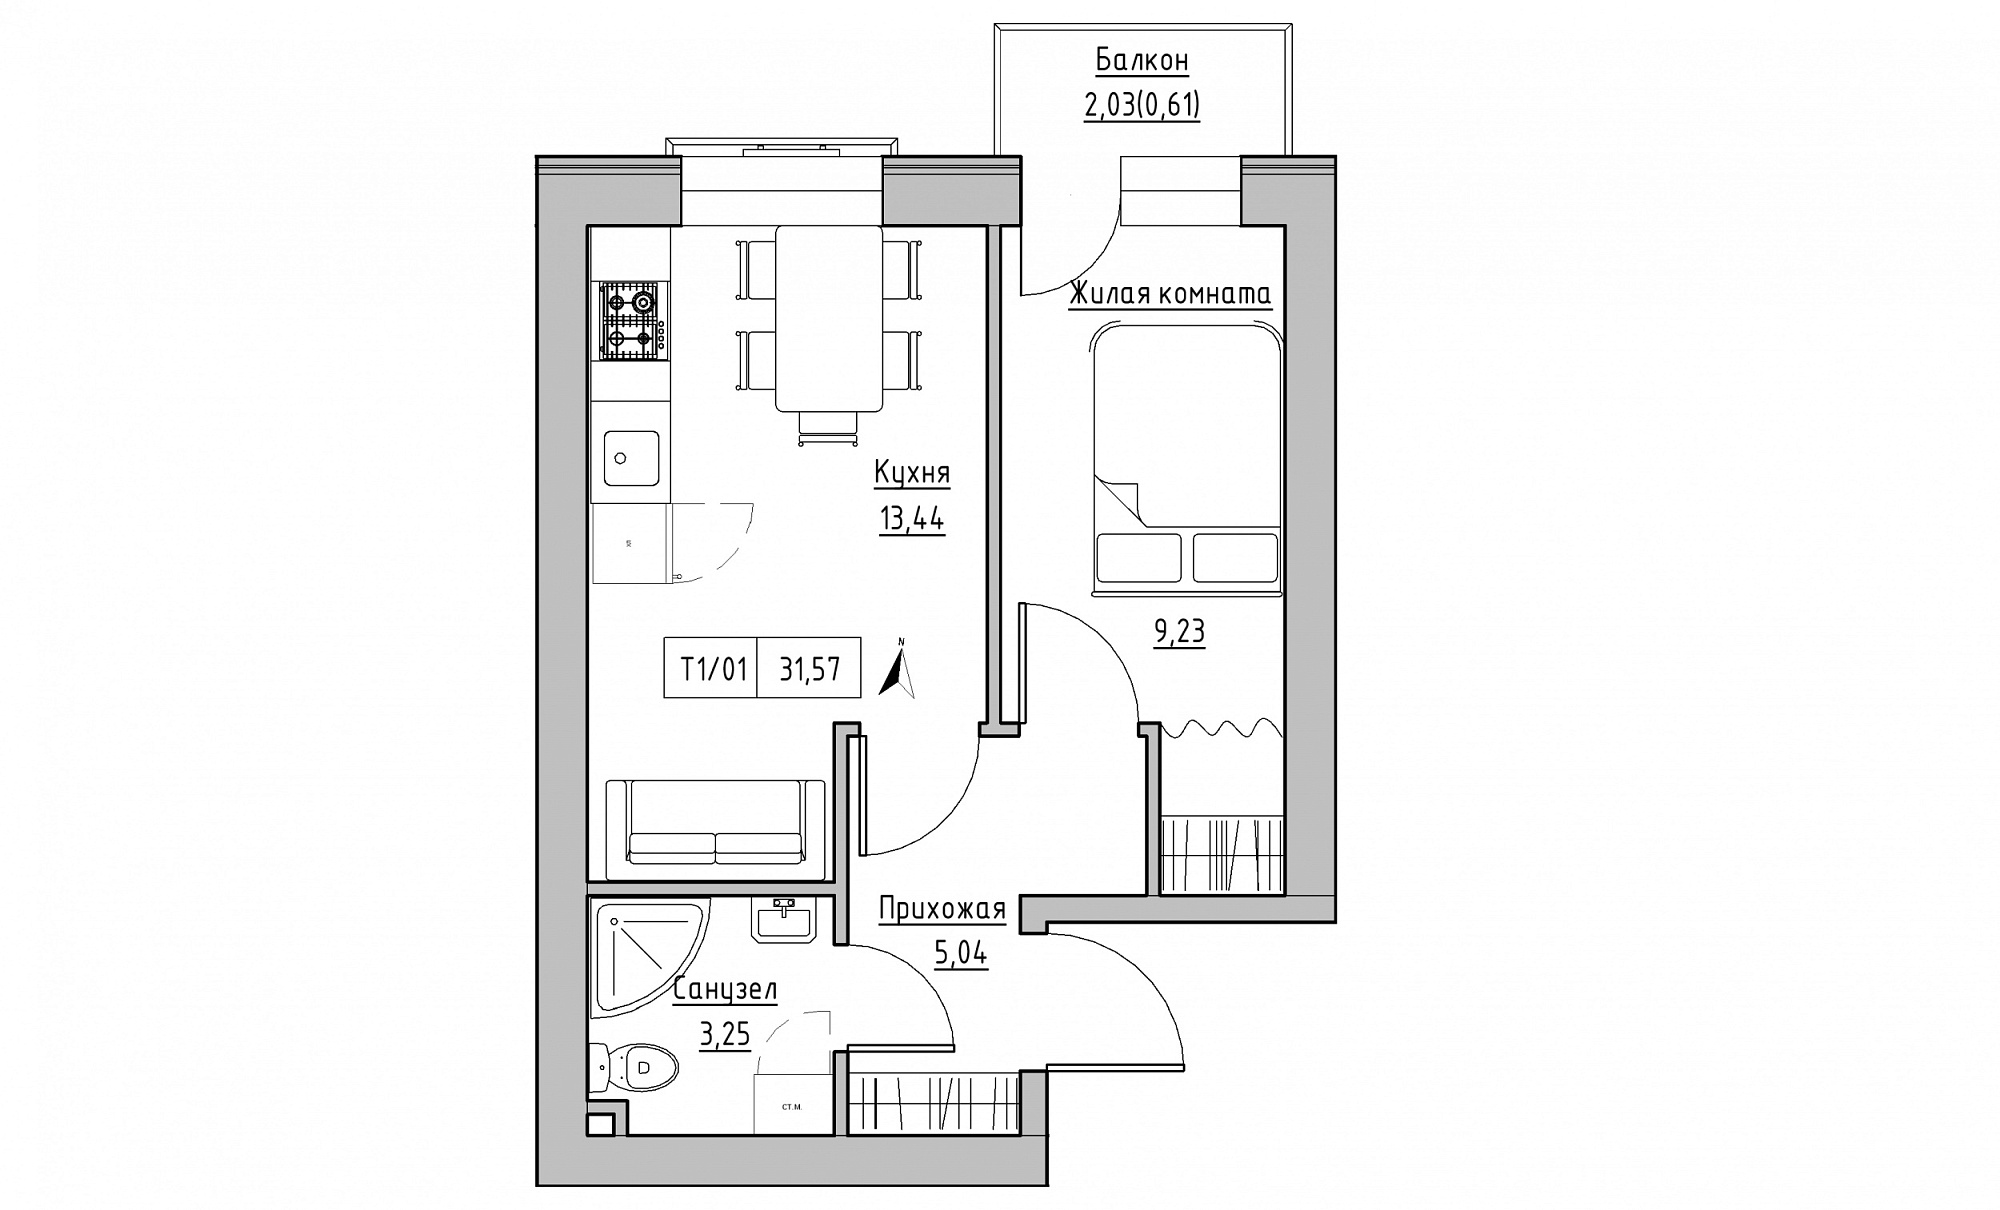 Планировка 1-к квартира площей 31.57м2, KS-015-03/0013.